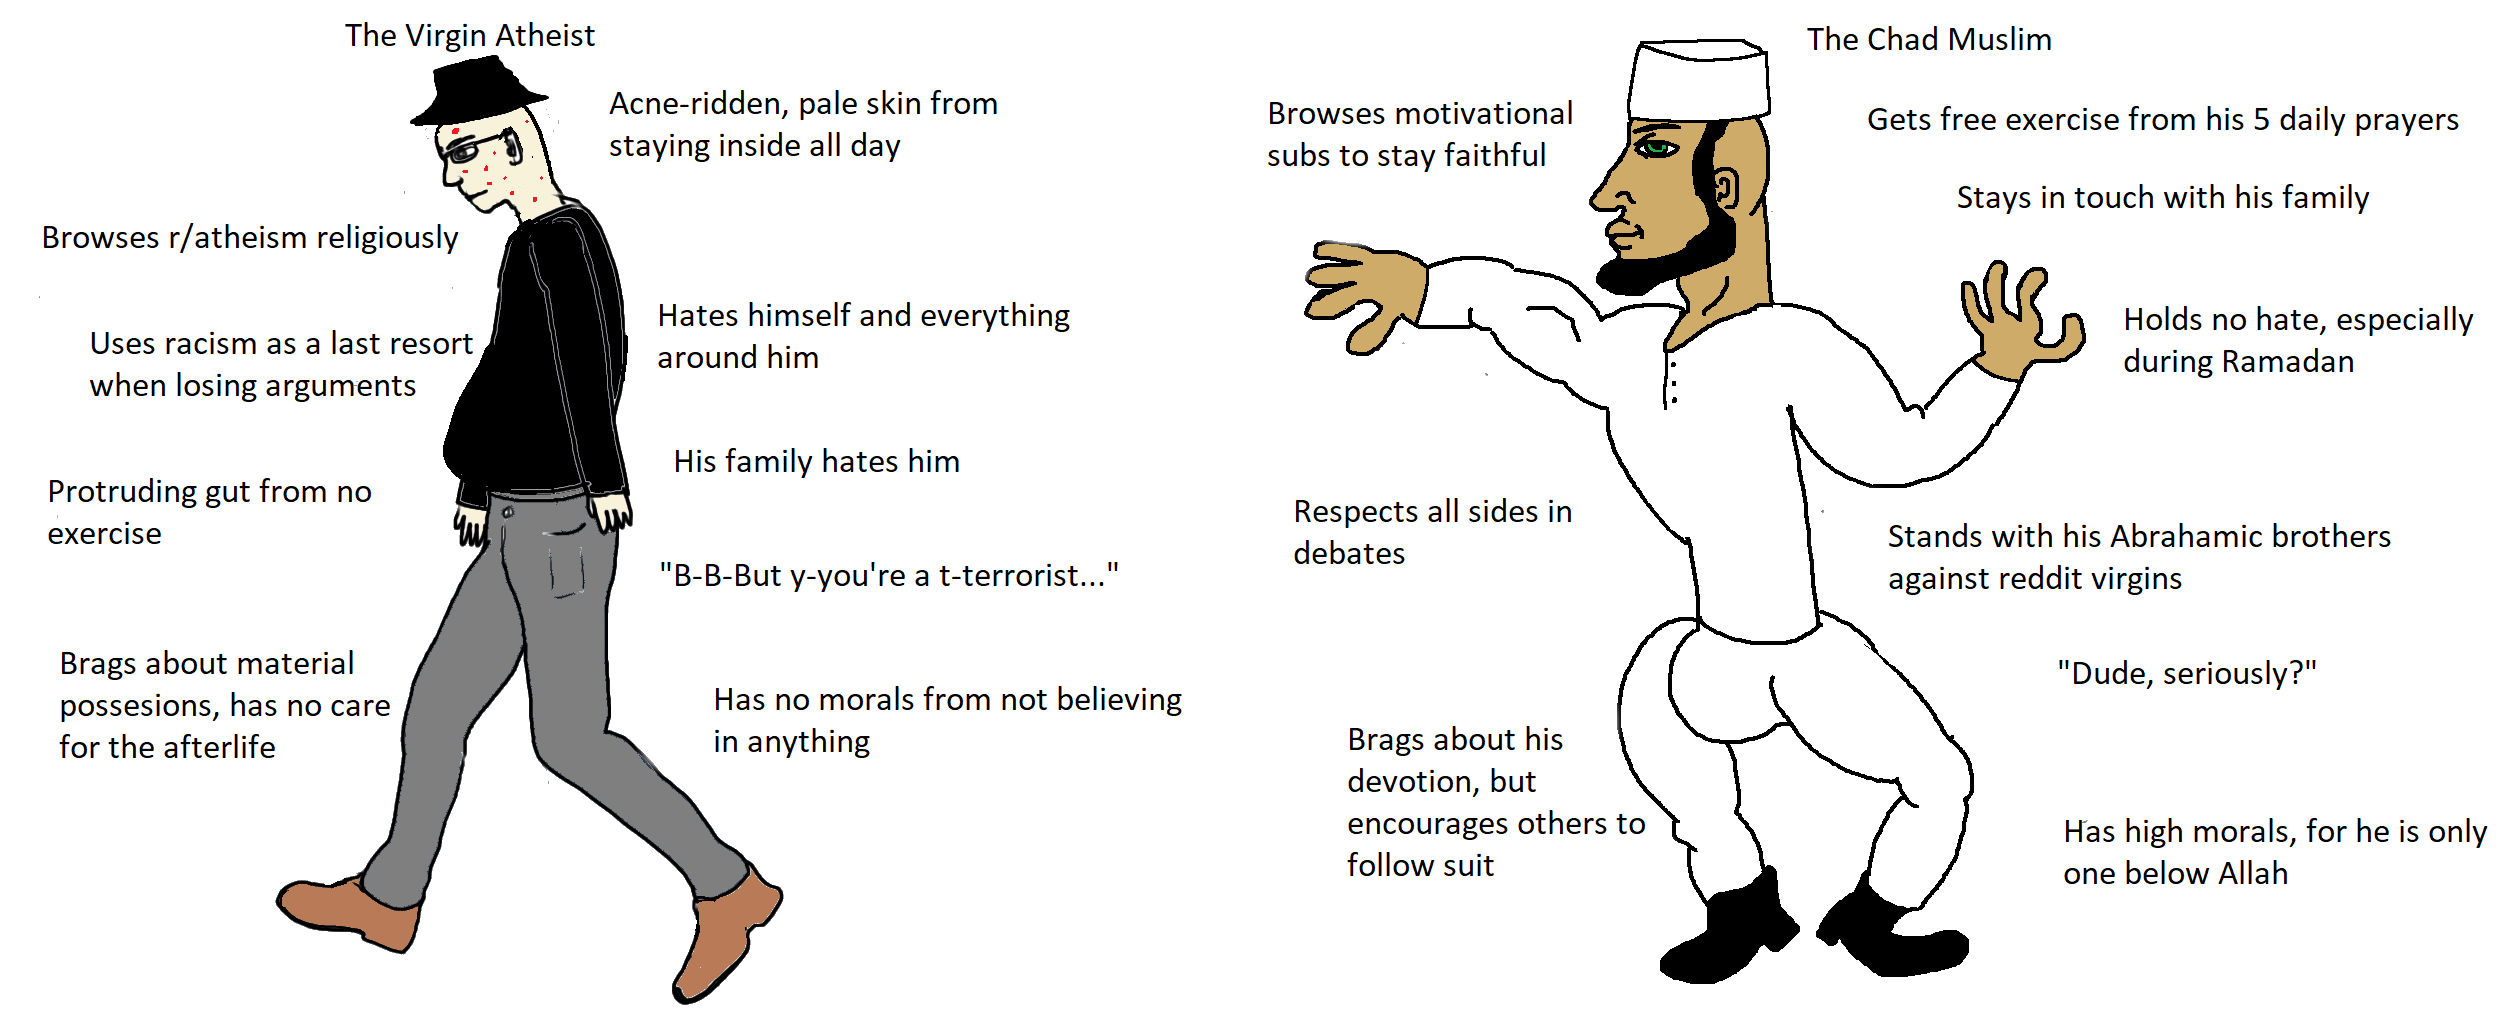 Virgin Atheist vs Chad Muslim : virginvschad